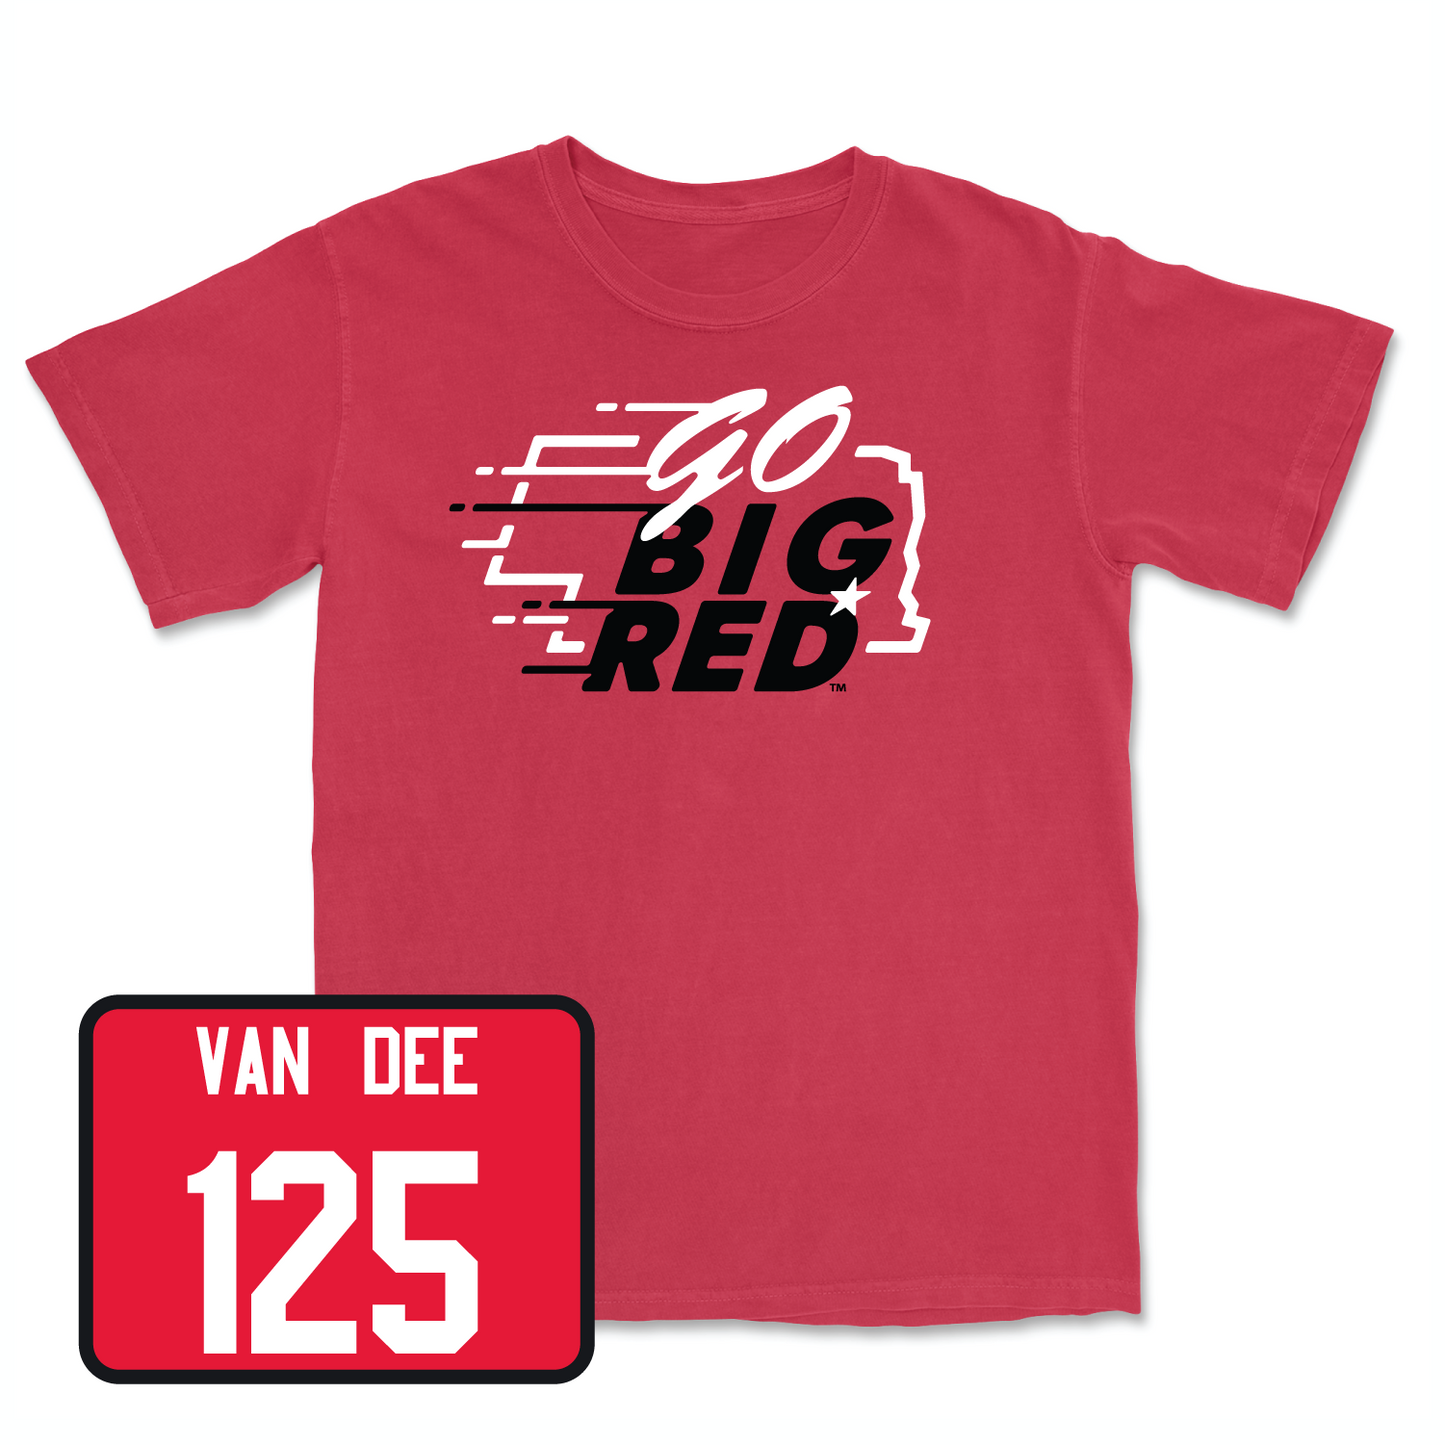 Red Wrestling GBR Tee Small / Jacob Van Dee | #125